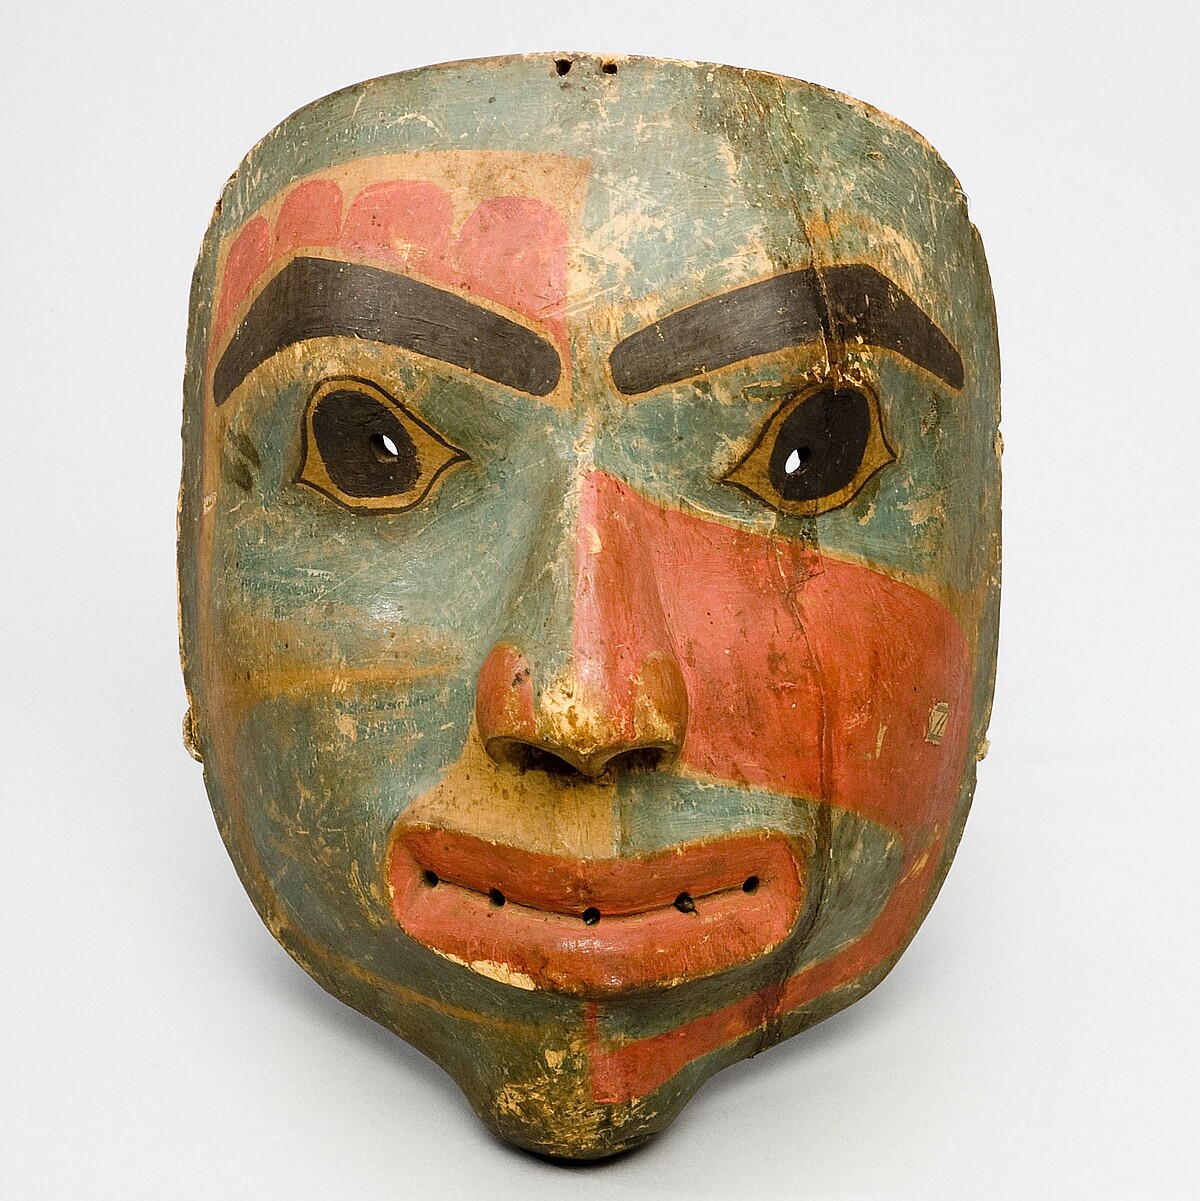 Die Maske hat die Form eines Gesichts, zeigt große Augen, prägnante Ausgenbrauen und Lippen sowie eine dreifarbige Gesichtsbemalung mit Formen und Mustern.